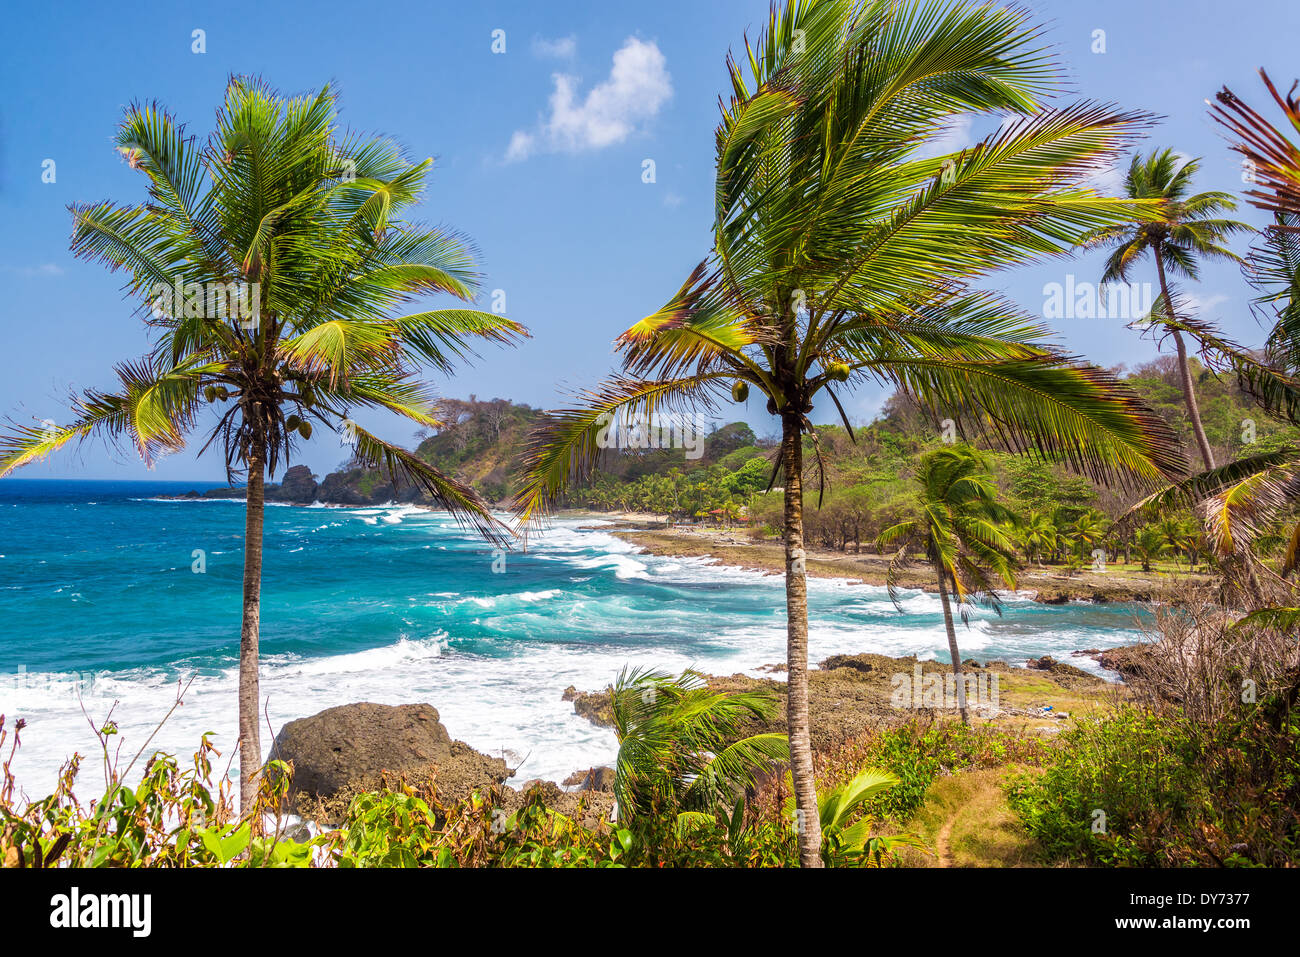 Palm trees and Caribbean coastline near Capurgana, Colombia Stock Photo